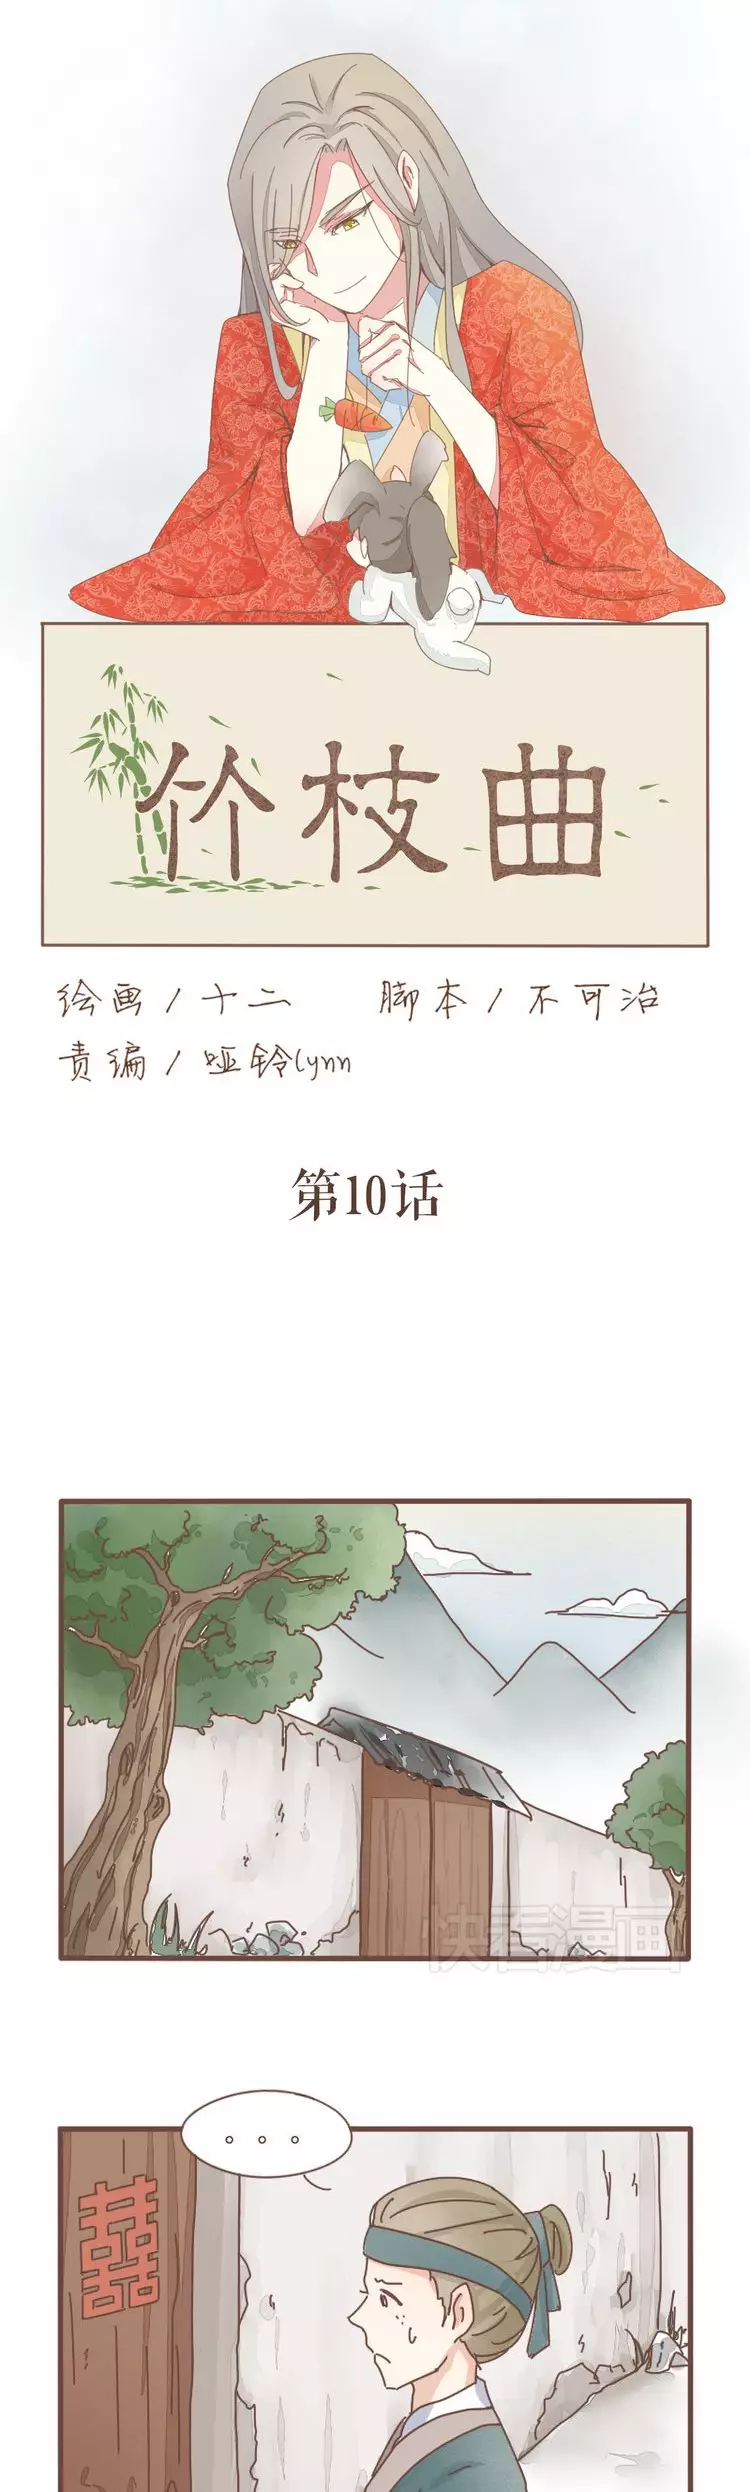 Zhuzhiqu - 10 page 3-4de7cbe6